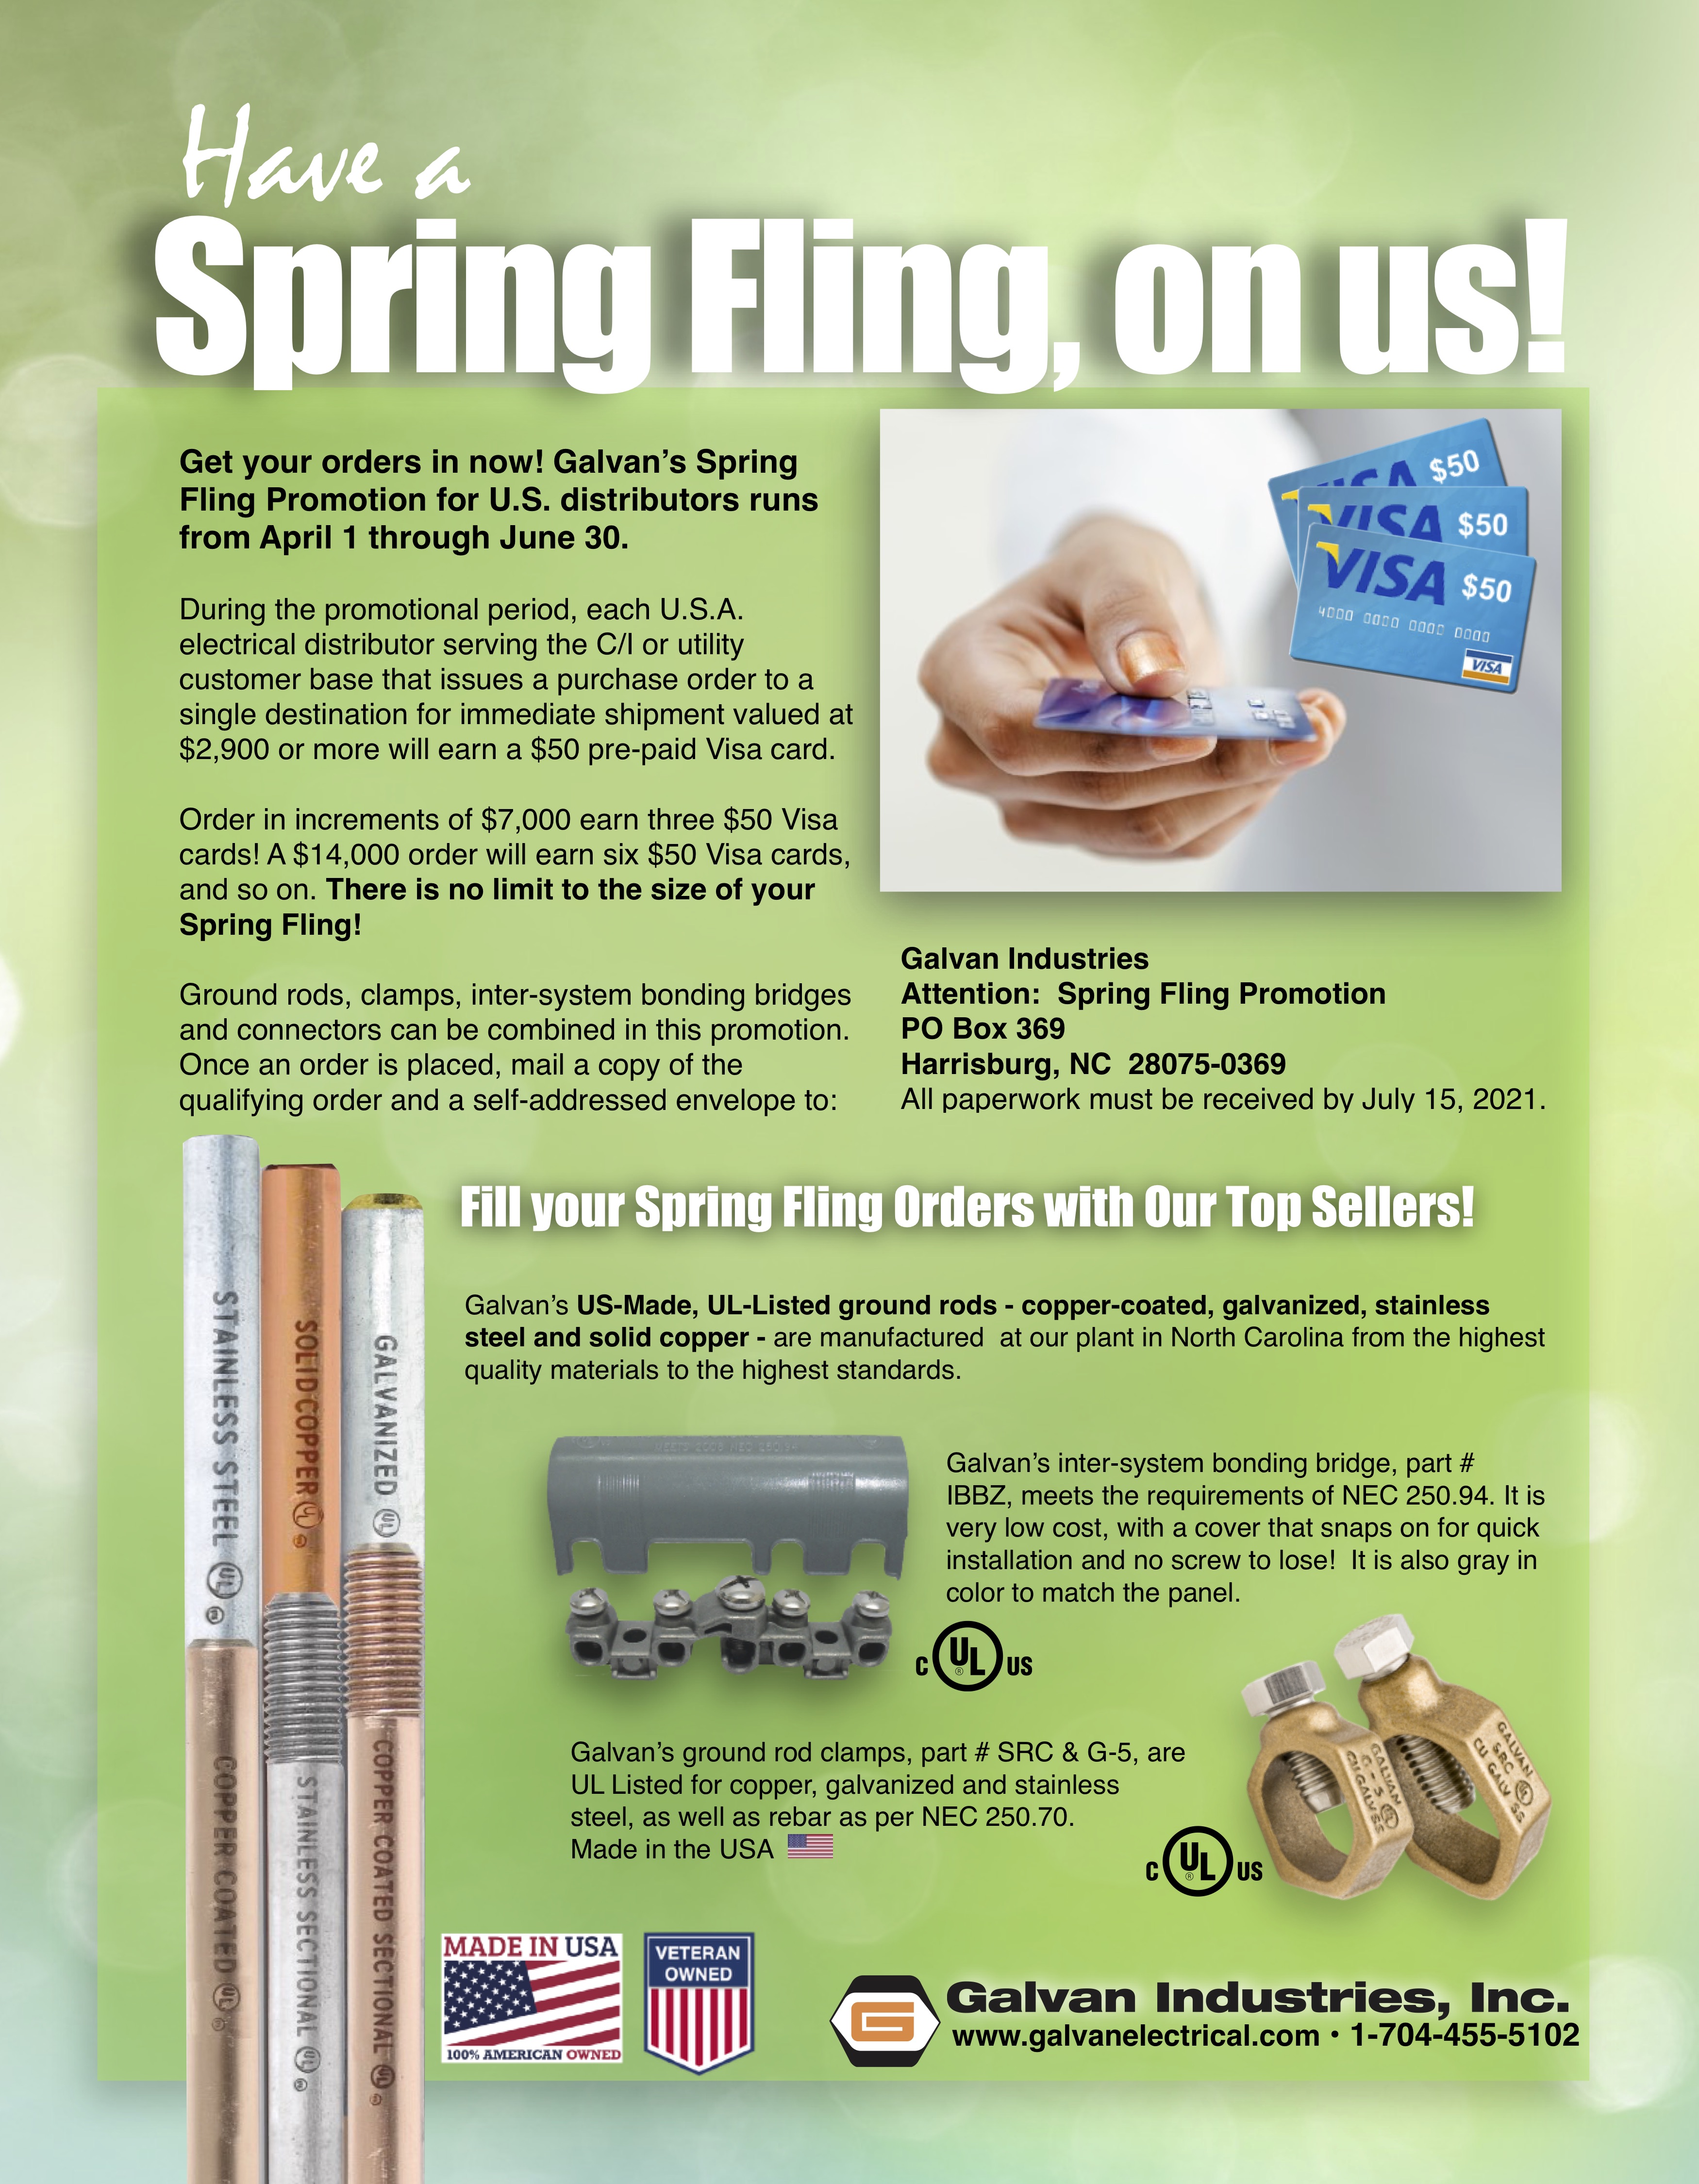 Download Galvan's Spring Fling Promotion flier at www.galvanelectrical.com for complete details.